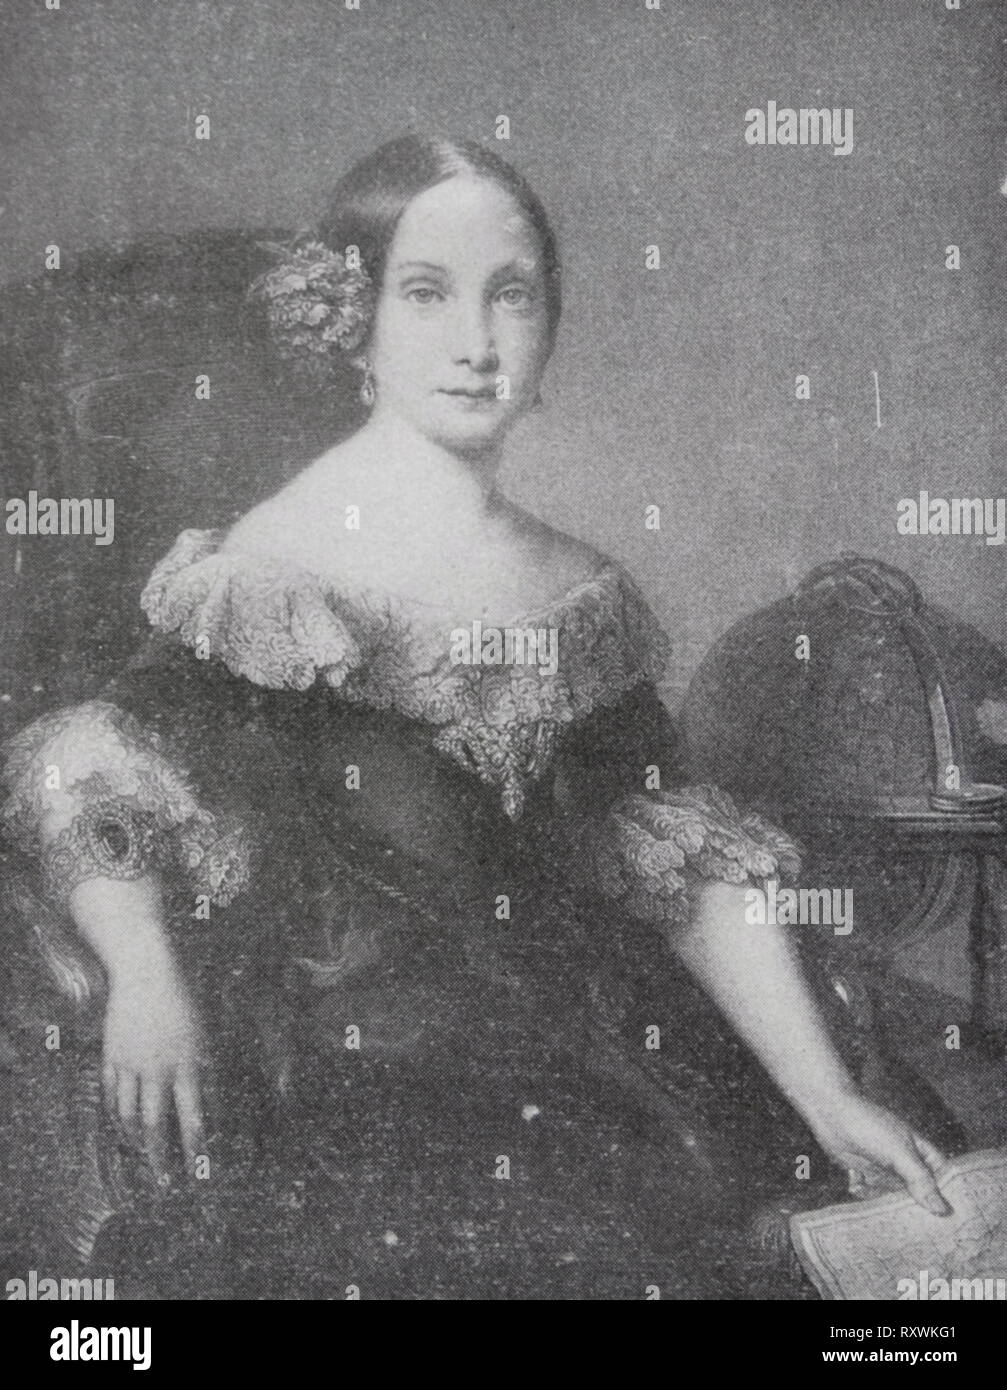 Isabel II nella sua gioventù (1842). La sua maggioranza non era stato proclamato. Ritratto di Vicente Lopez. Isabella II (1830 - 1904), regina di Spagna dal 1833 fino al 1868. Ella è salito al trono come un neonato, ma la sua successione è stato contestato dai carlisti, il cui rifiuto di riconoscere una femmina sovrano ha portato alla guerra carlista. Dopo un travagliato regnare, ella fu deposto nella Gloriosa Rivoluzione del 1868, e formalmente abdica nel 1870. Suo figlio Alfonso XII, divenne re nel 1874 Foto Stock